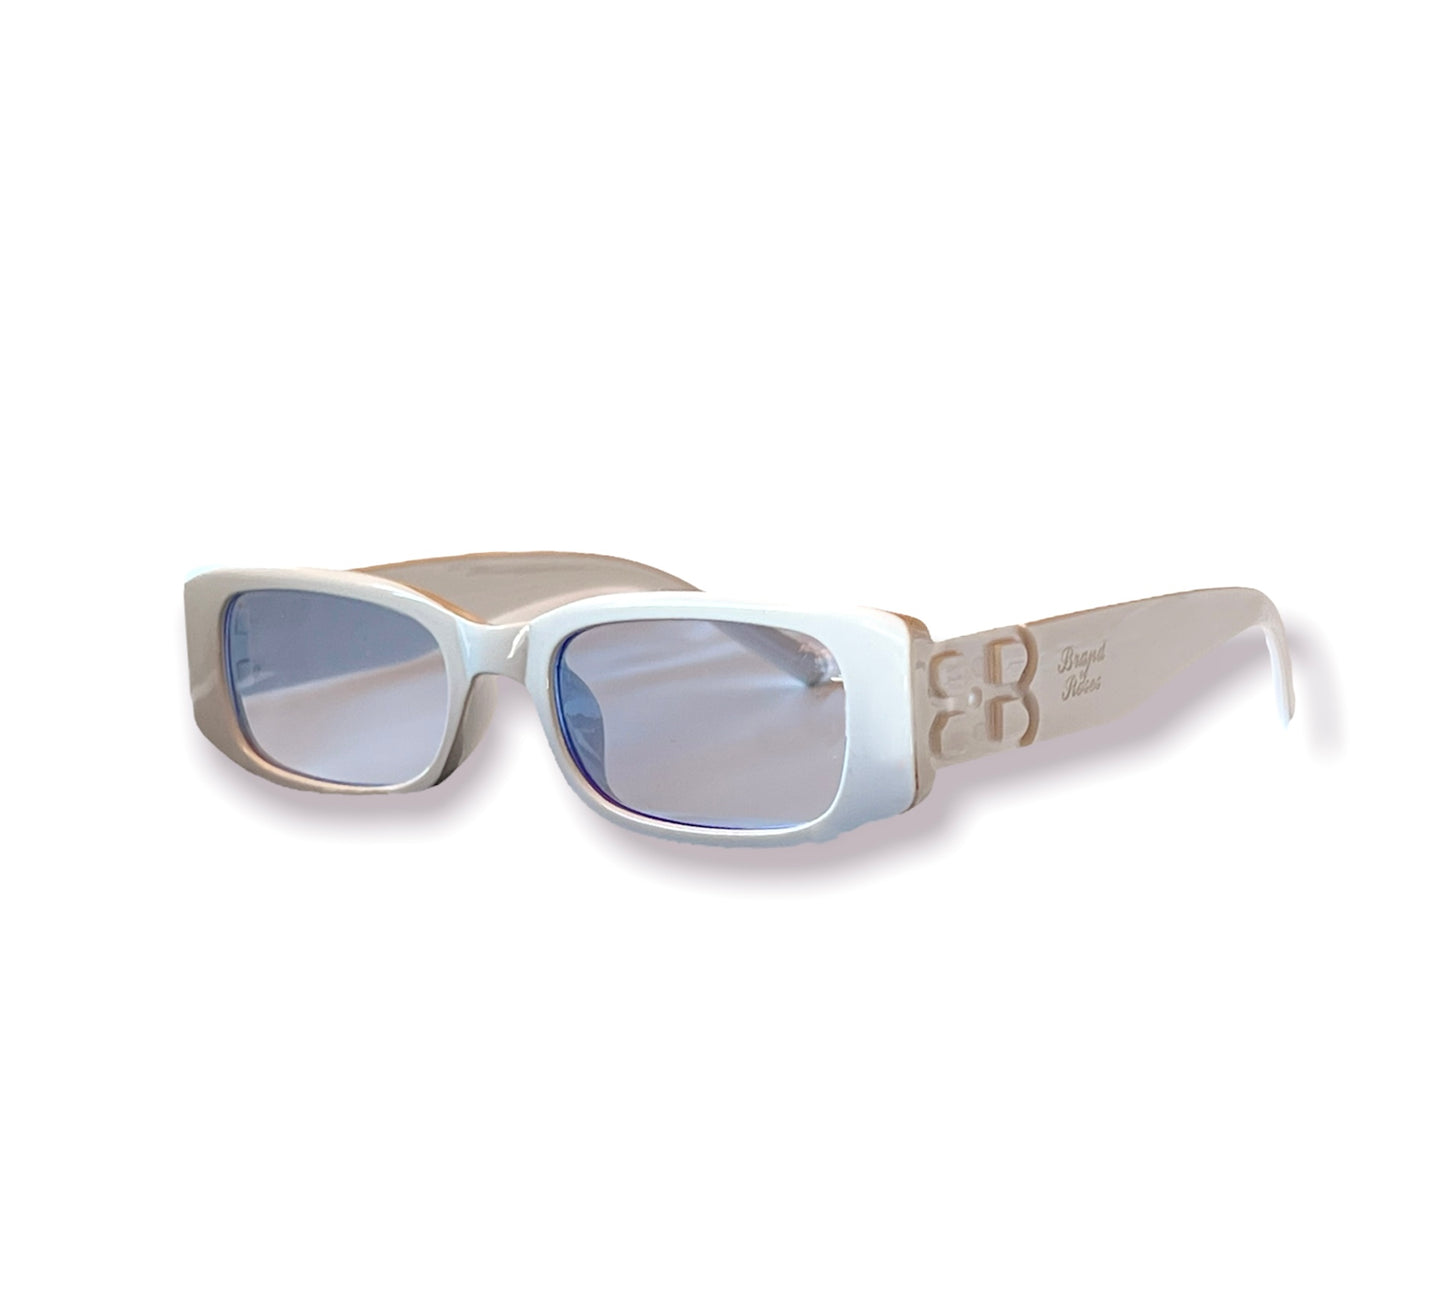 BoR Glasses Blue on White